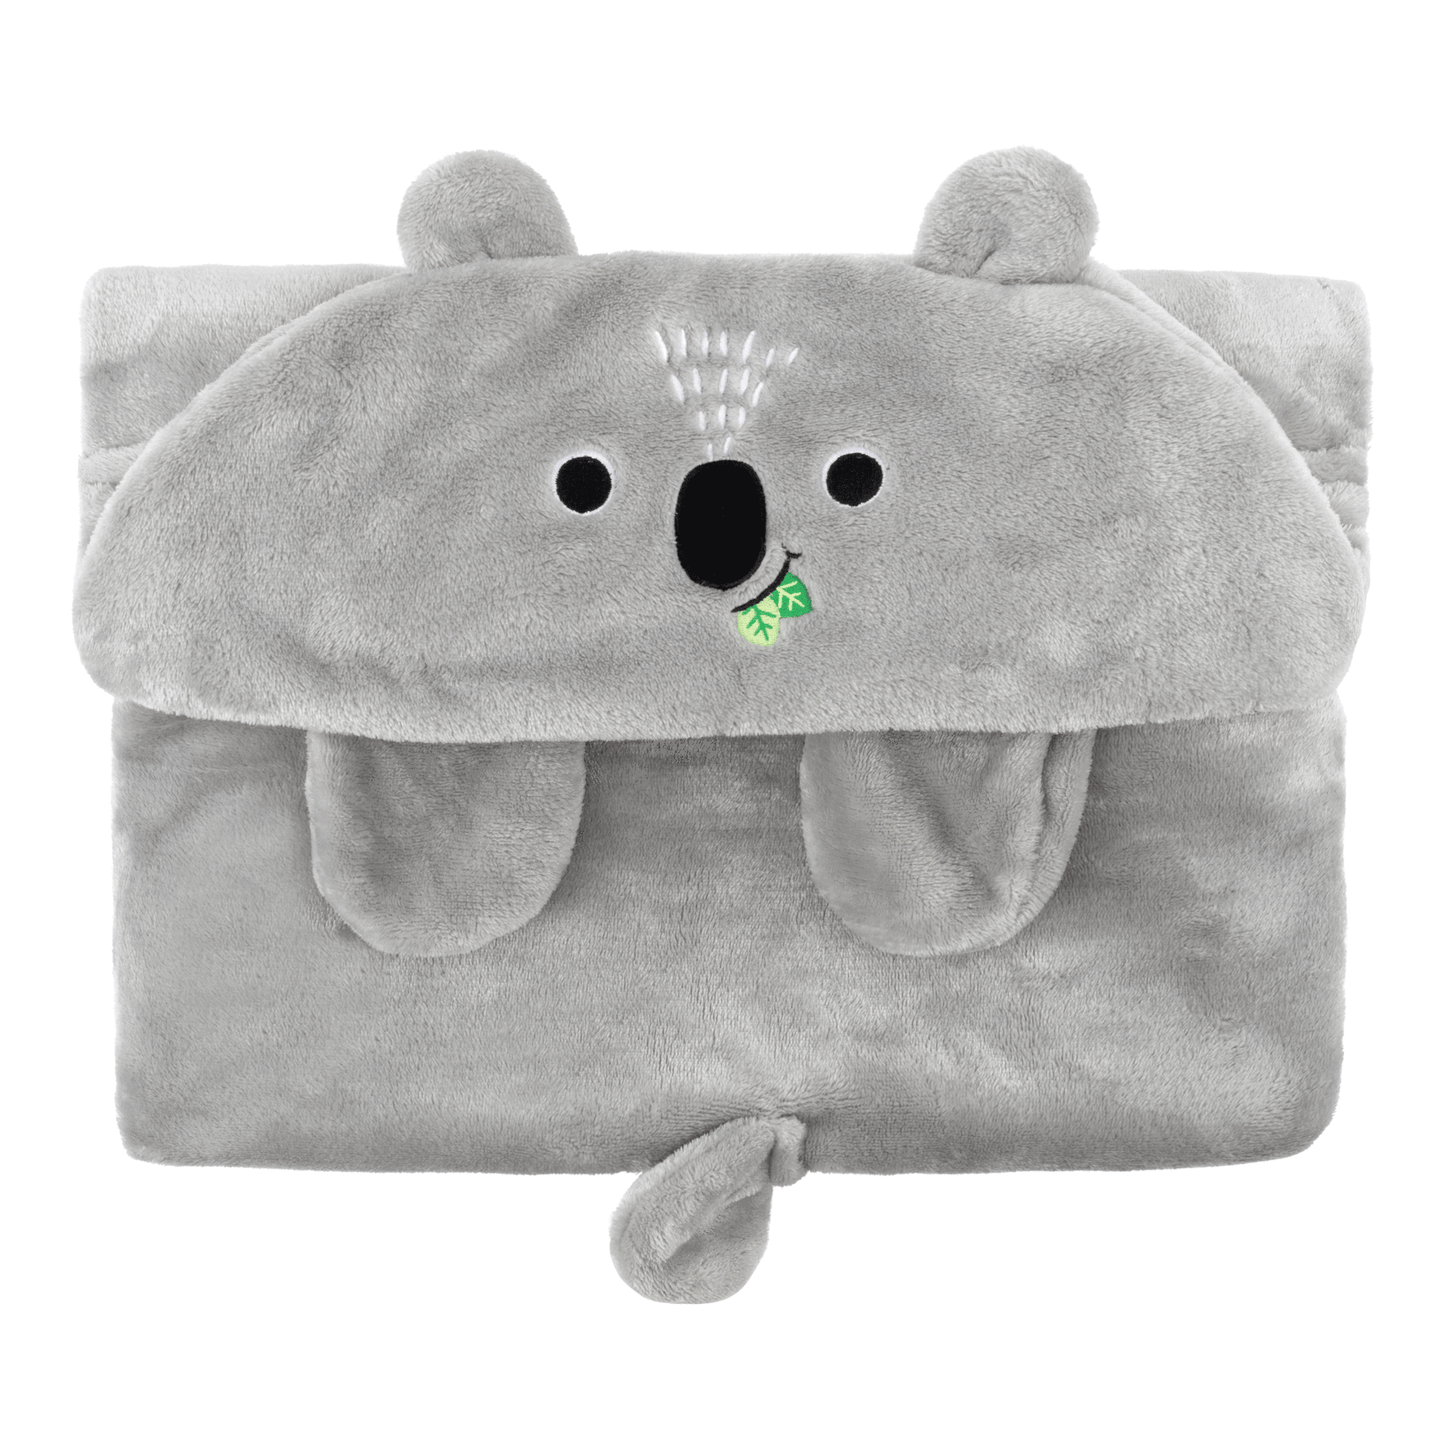 Zoocchini Hooded Blanket - Koala